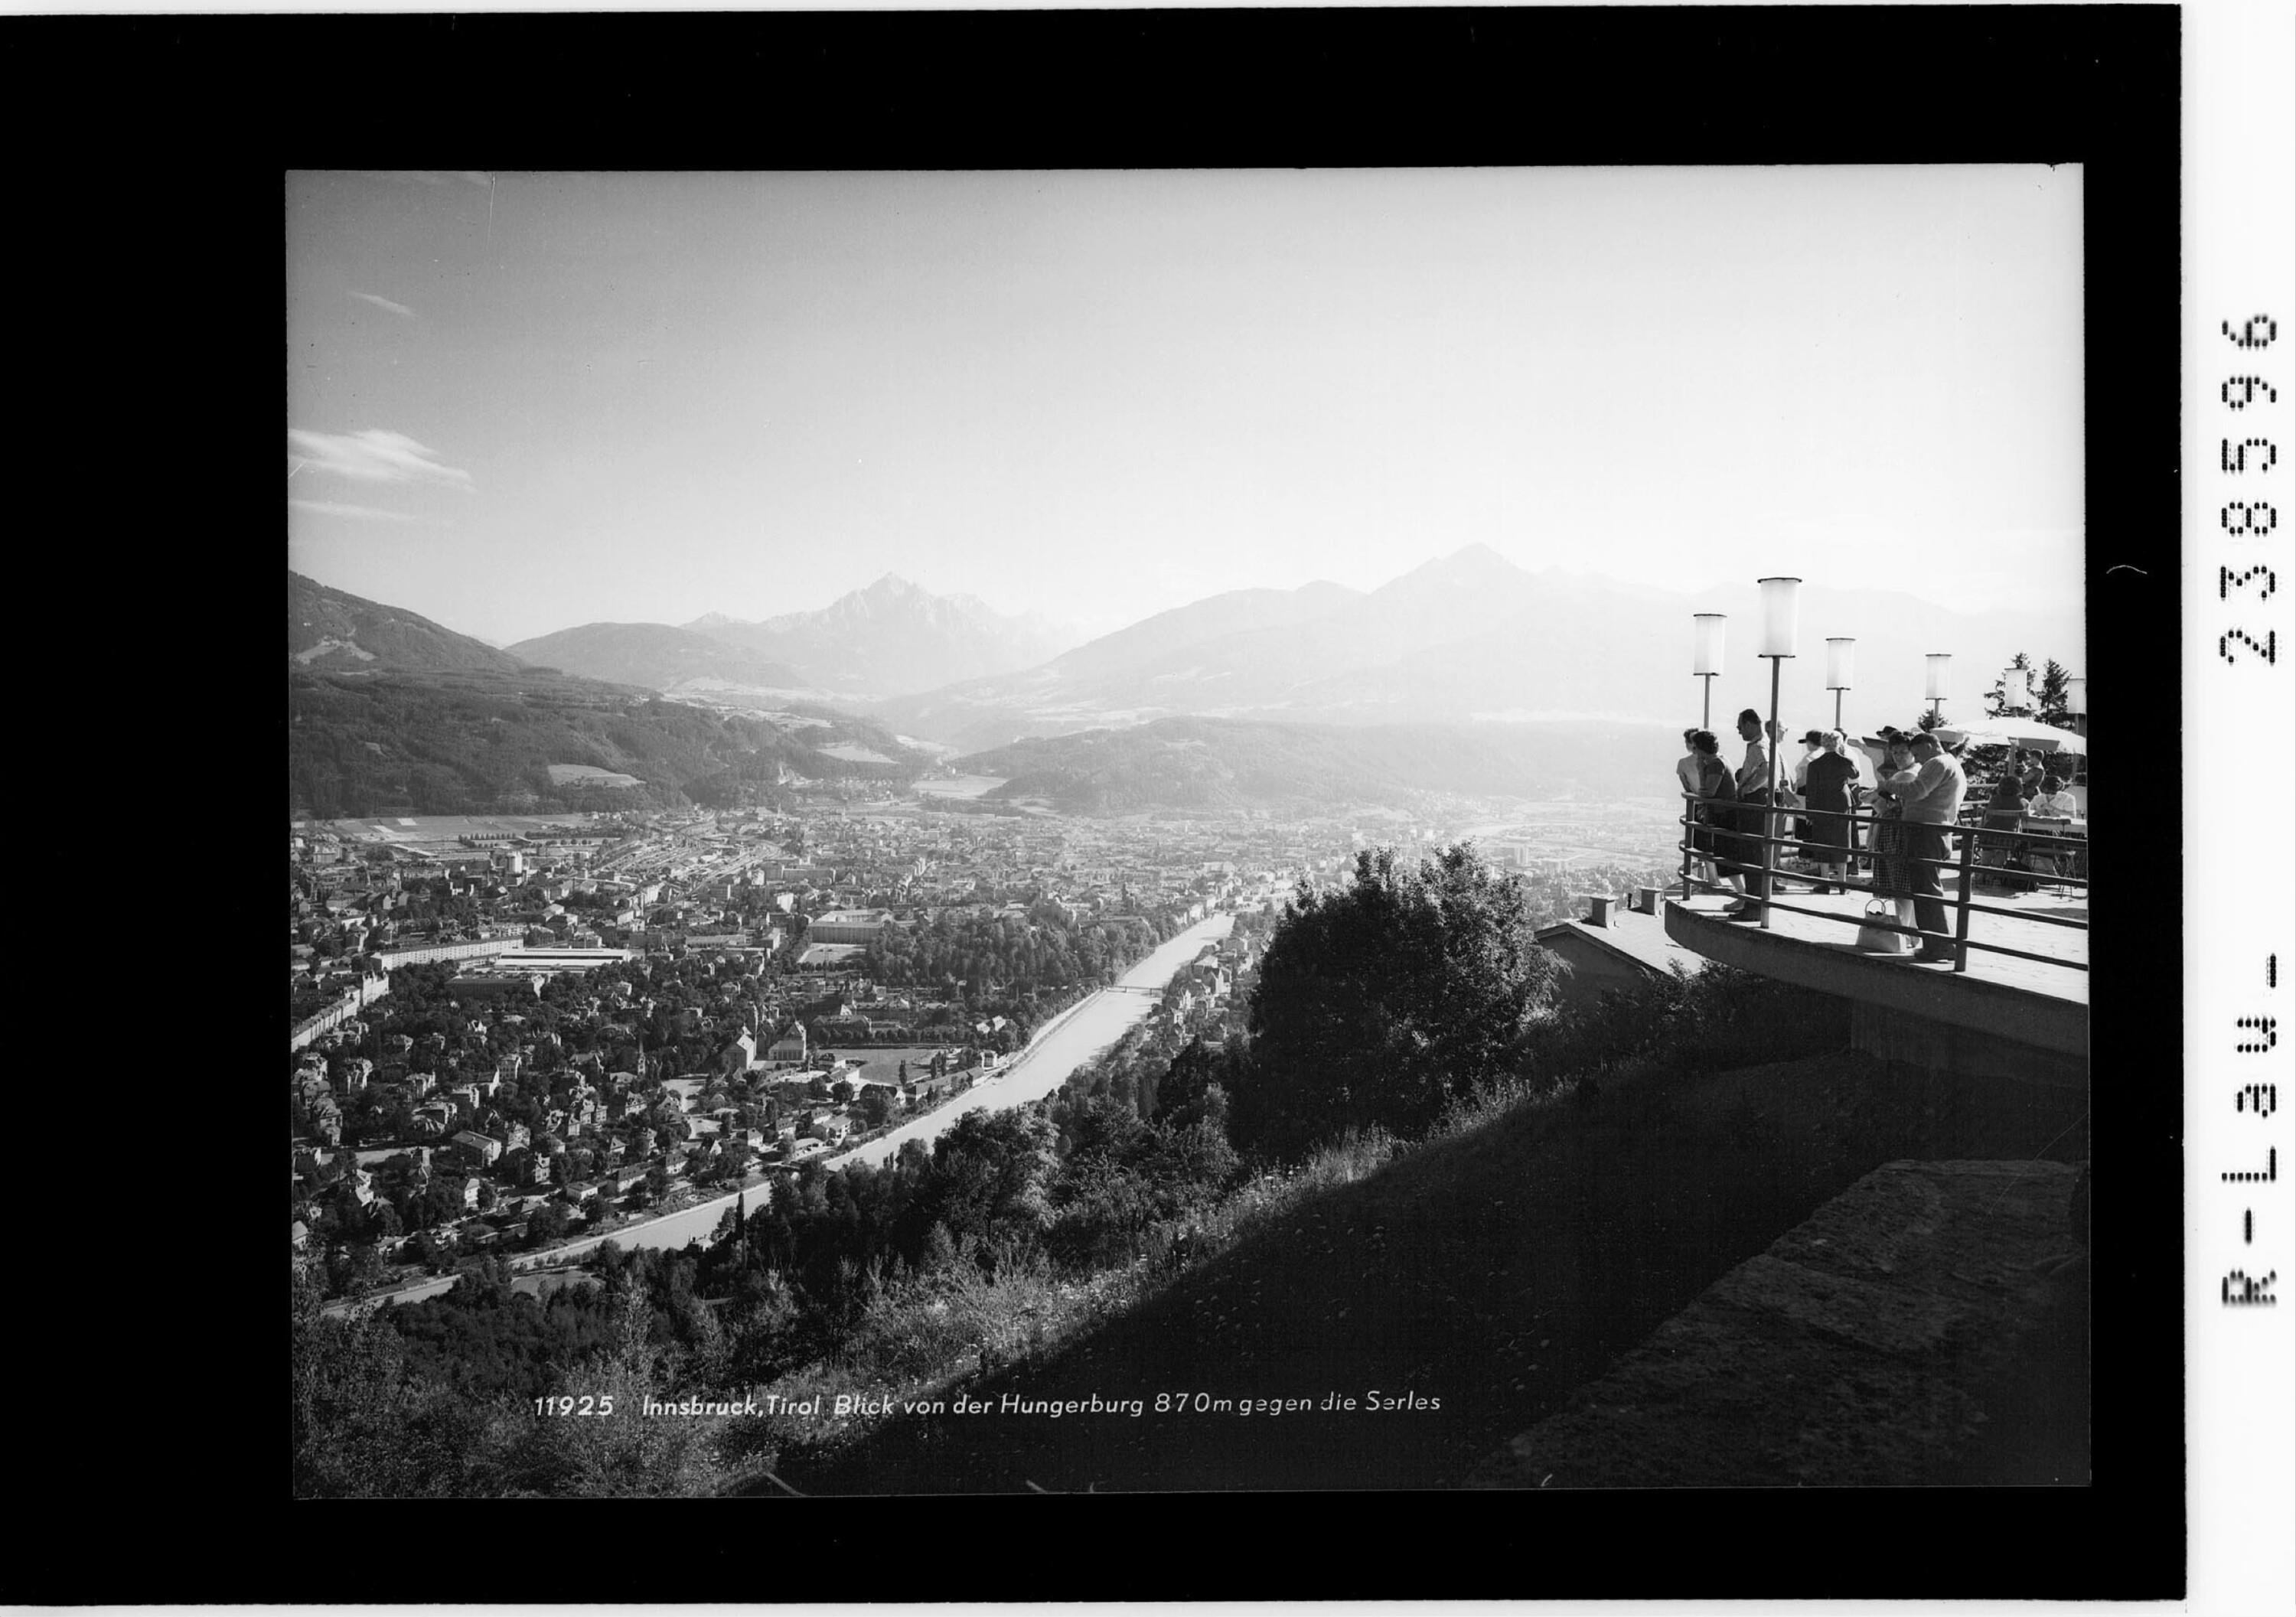 Innsbruck / Tirol / Blick von der Hungerburg 870 m gegen die Serles></div>


    <hr>
    <div class=